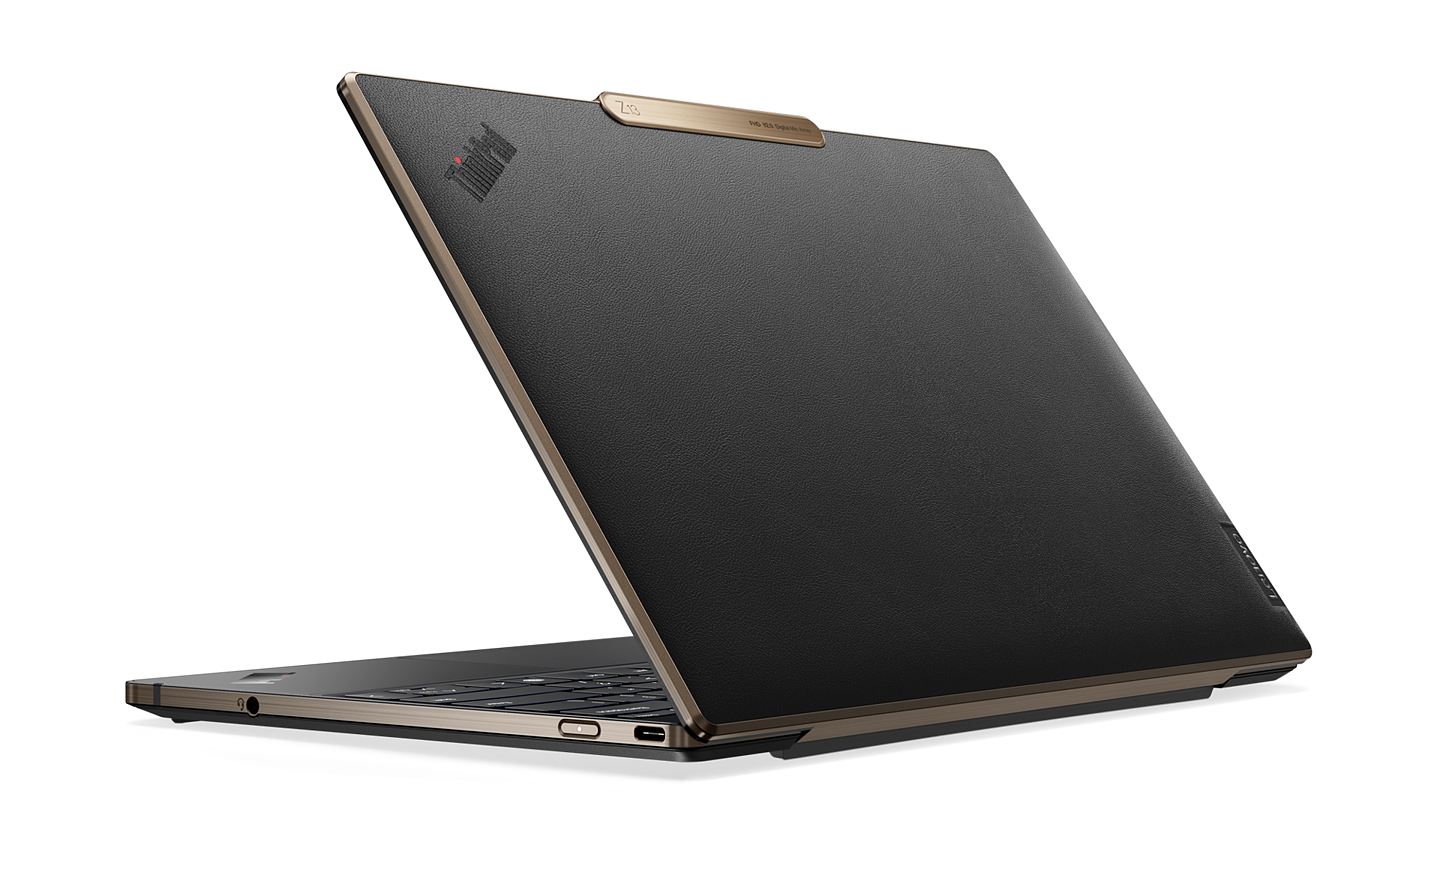 新款联想 ThinkPad 锐龙笔记本将可选高通 Wi-Fi 6E 网卡 - 1